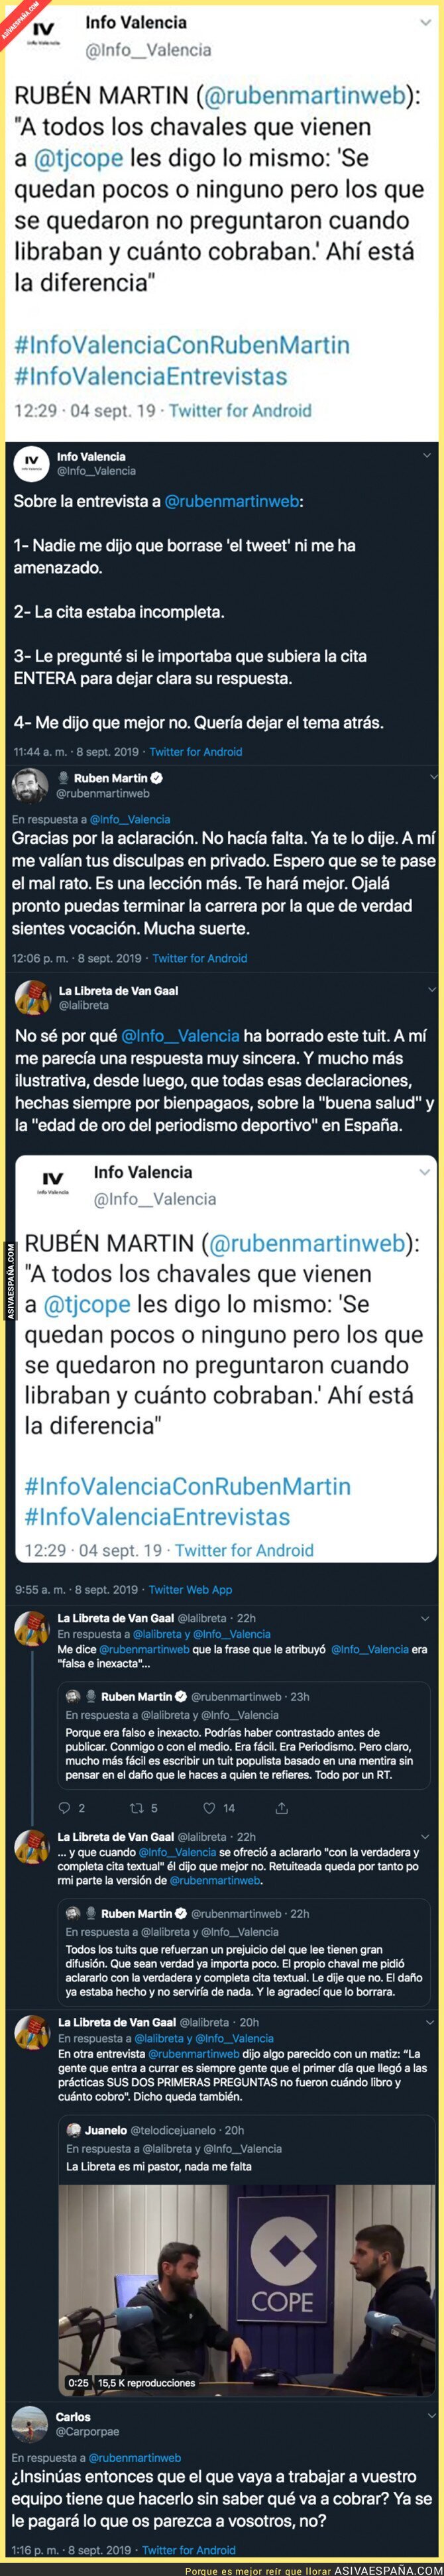 Las declaraciones más polémicas de Rubén Martín (COPE) sobre los becarios que ha indignado a mucha gente